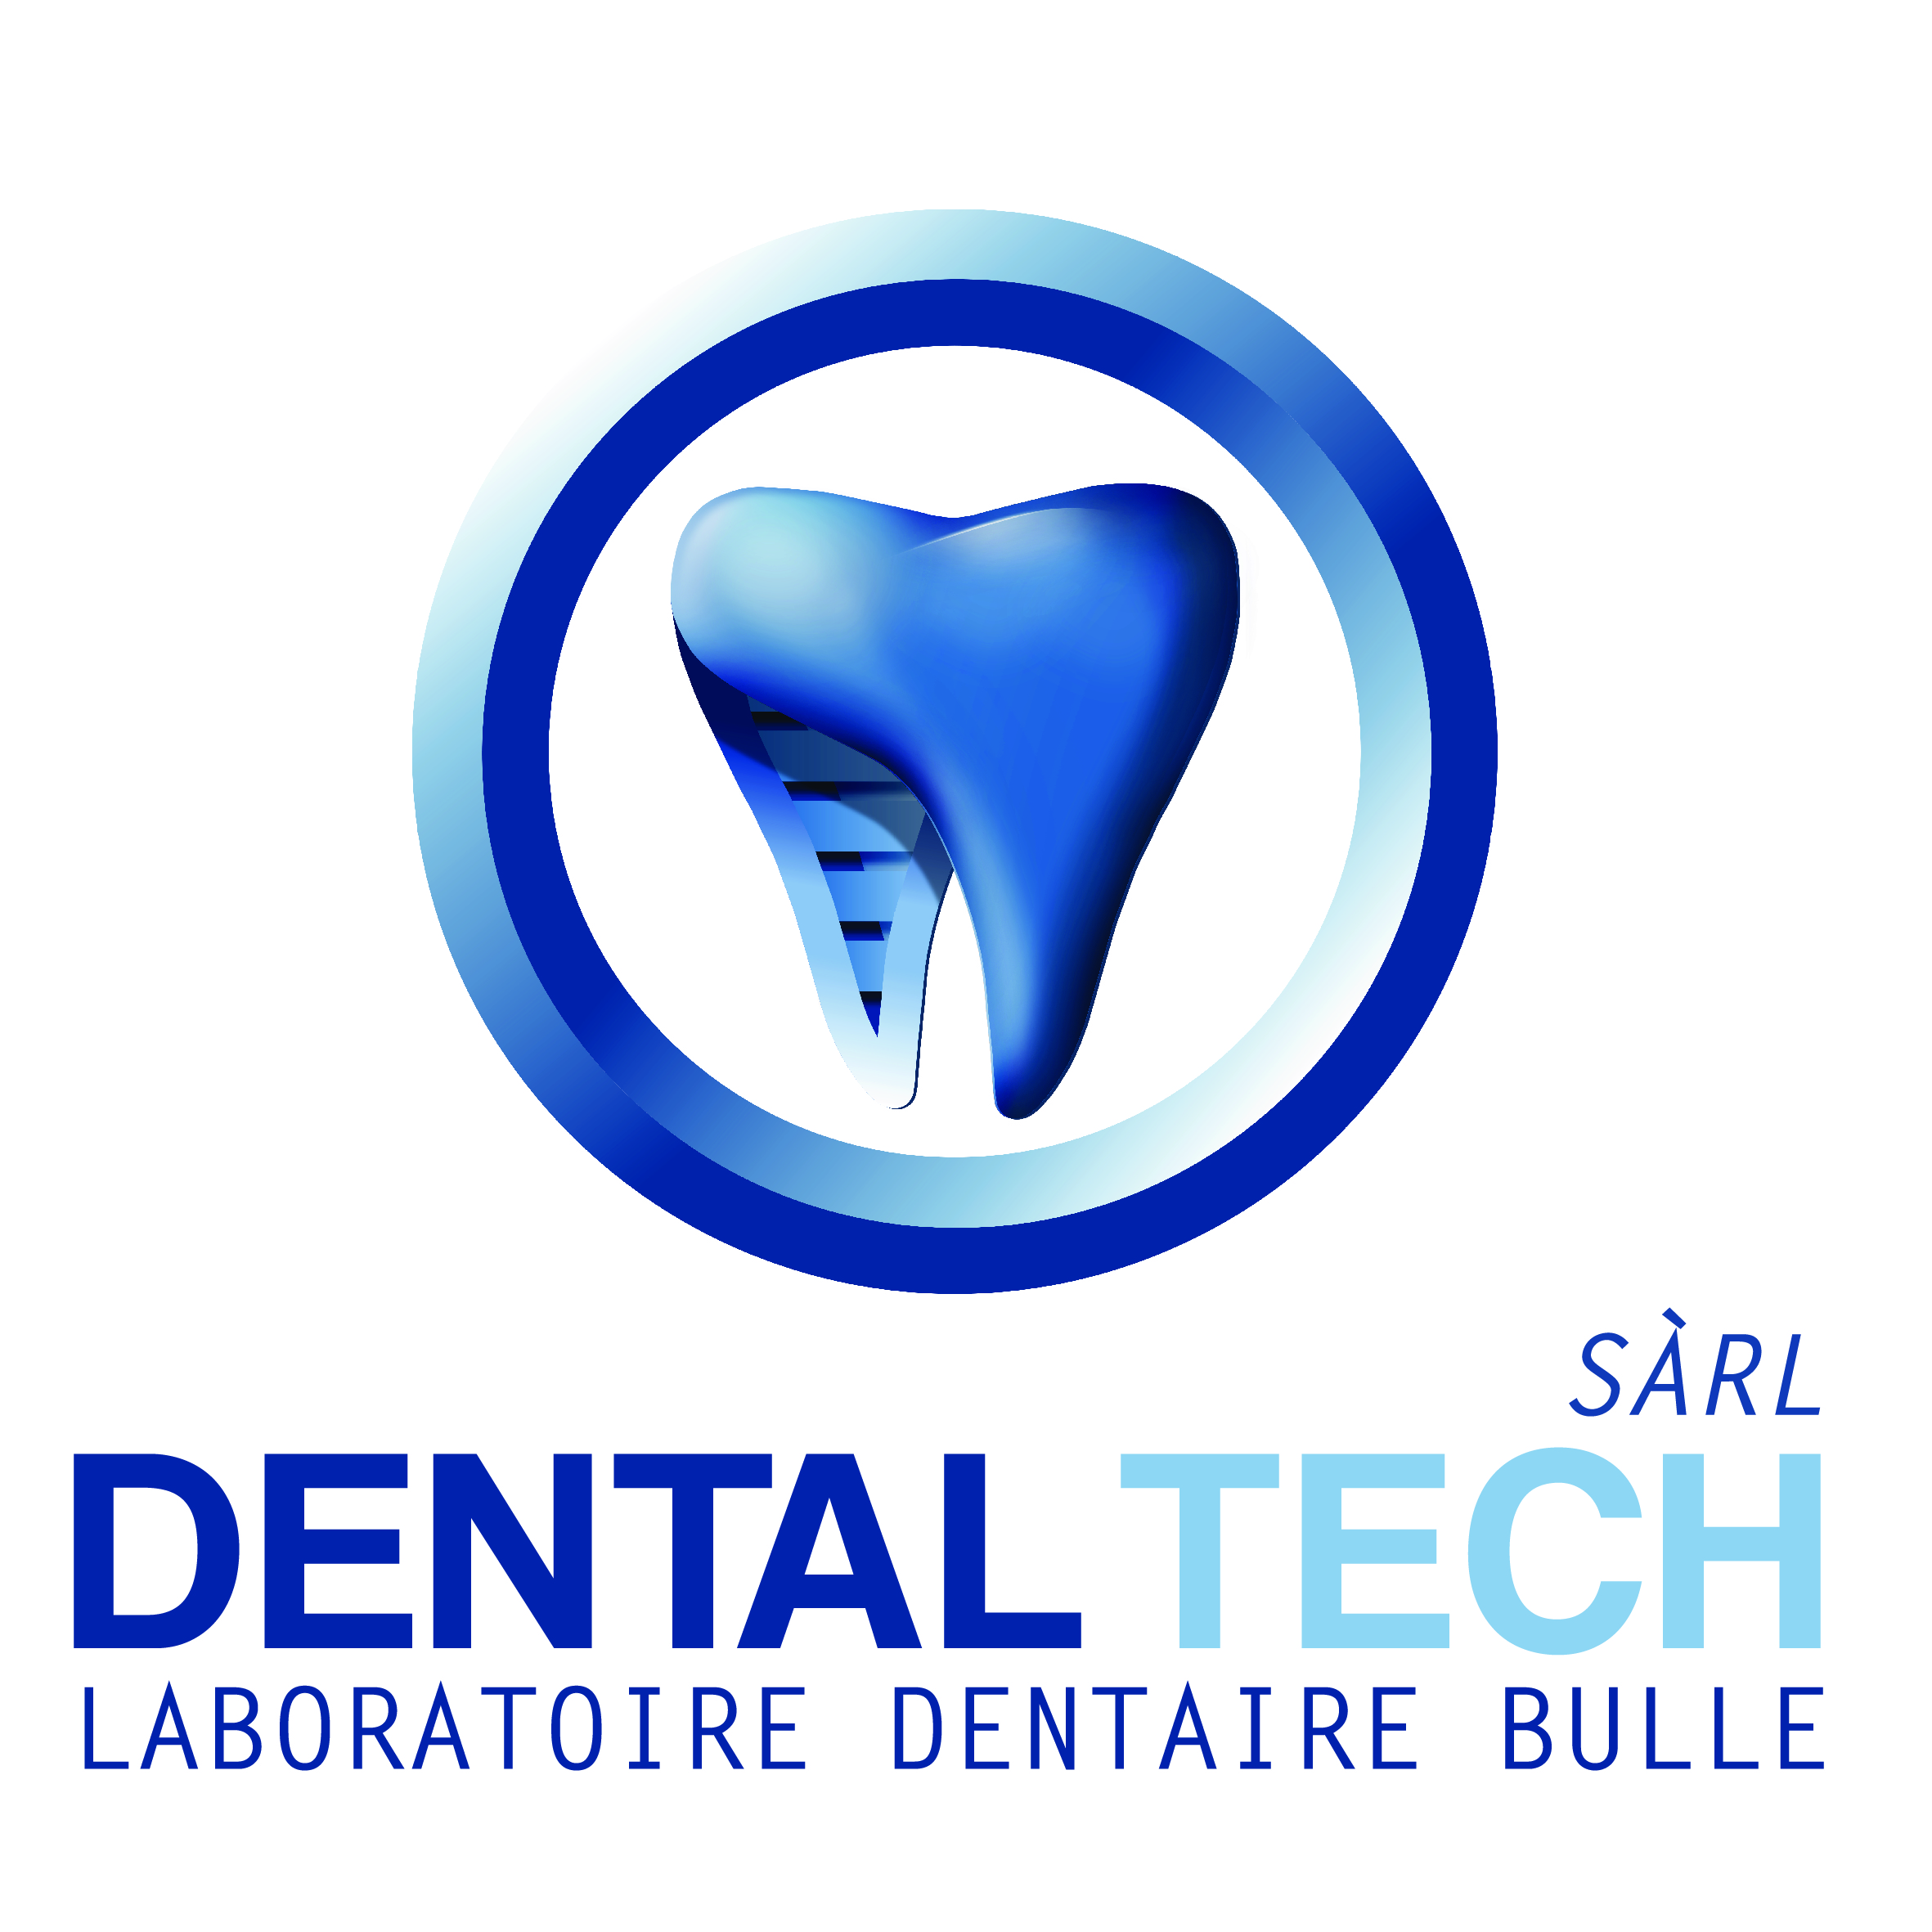 Logo_DentalTech_Bulle.jpg